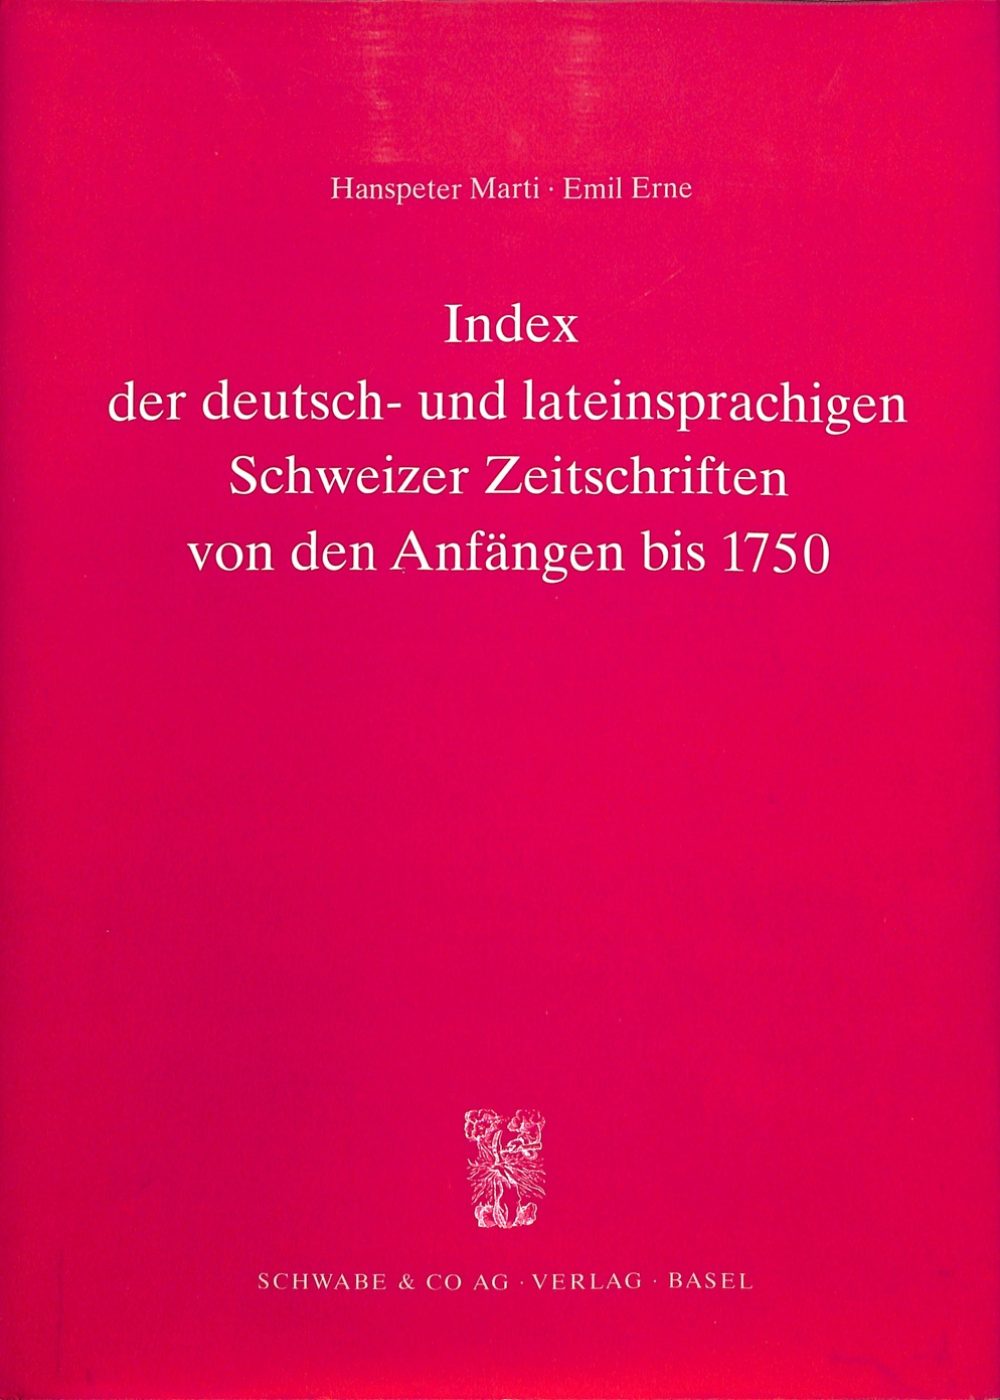 Index der deutsch- und lateinsprachigen Schweizer Zeitschriften von den Anfängen bis 1750